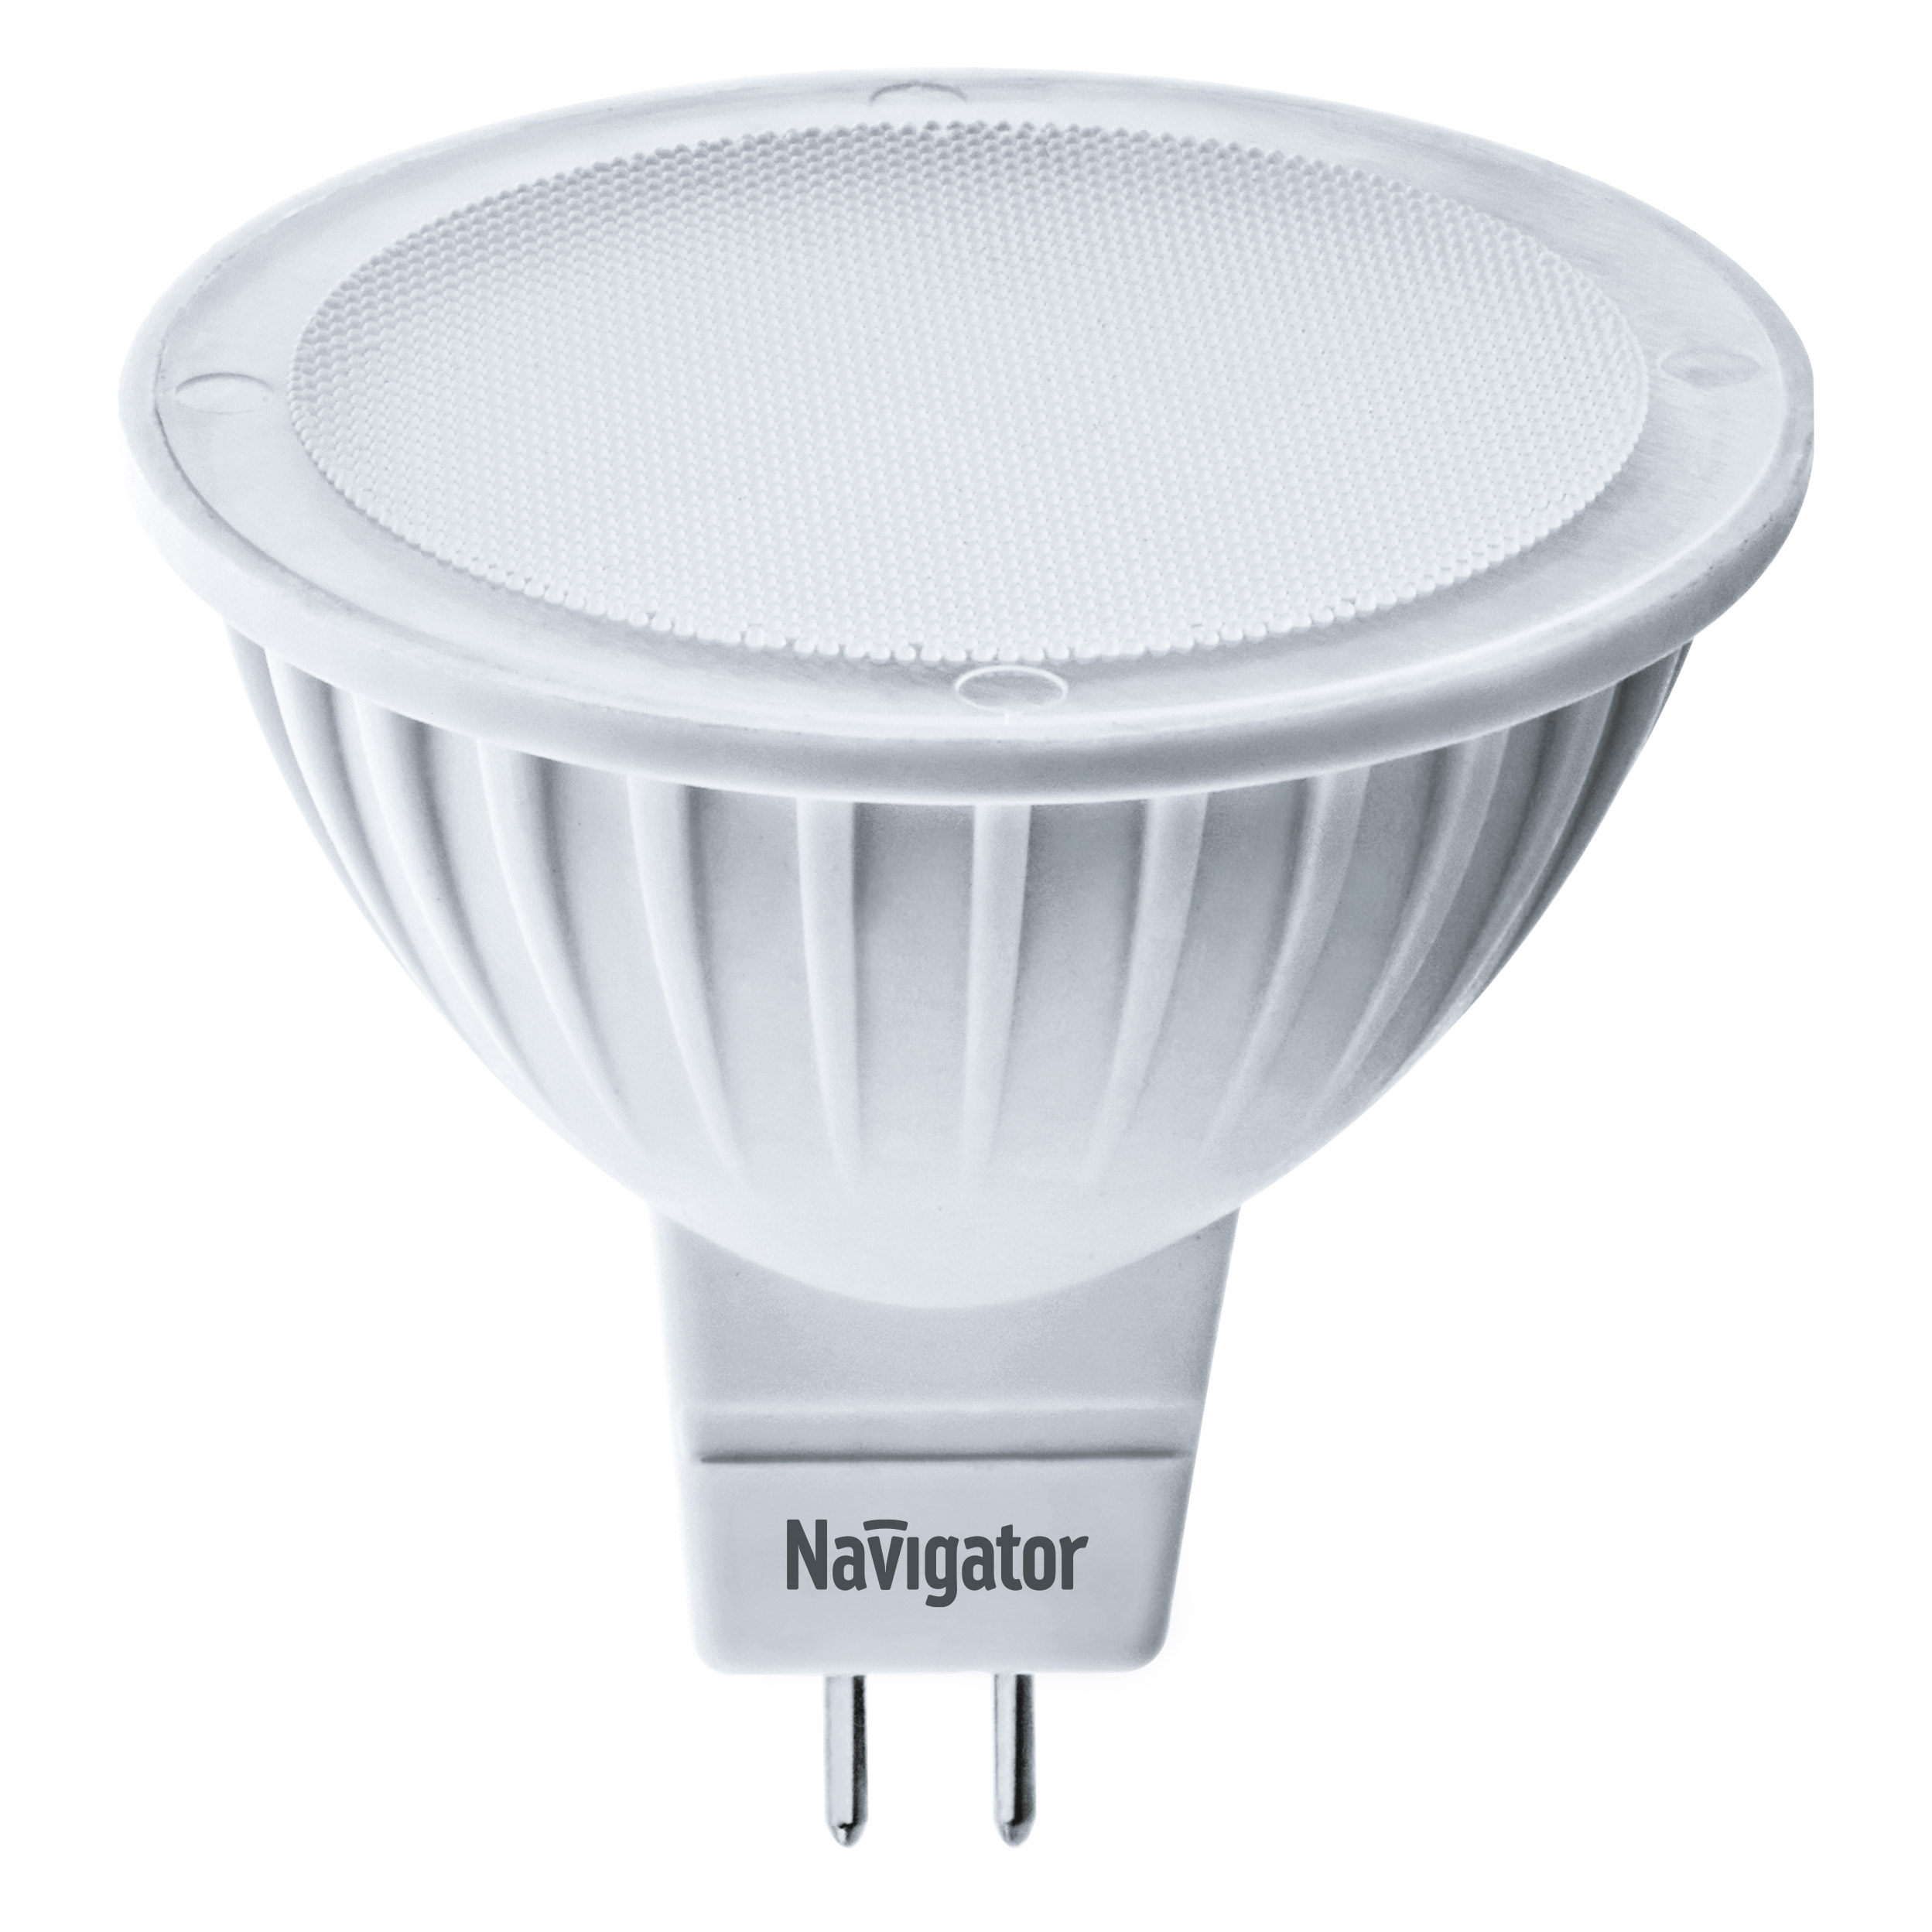 Лампа светодиодная Navigator MR16 3Вт 230В цоколь GU5.3 (теплый свет) лампа люминесцентная navigator t5 21вт цоколь g5 холодный свет